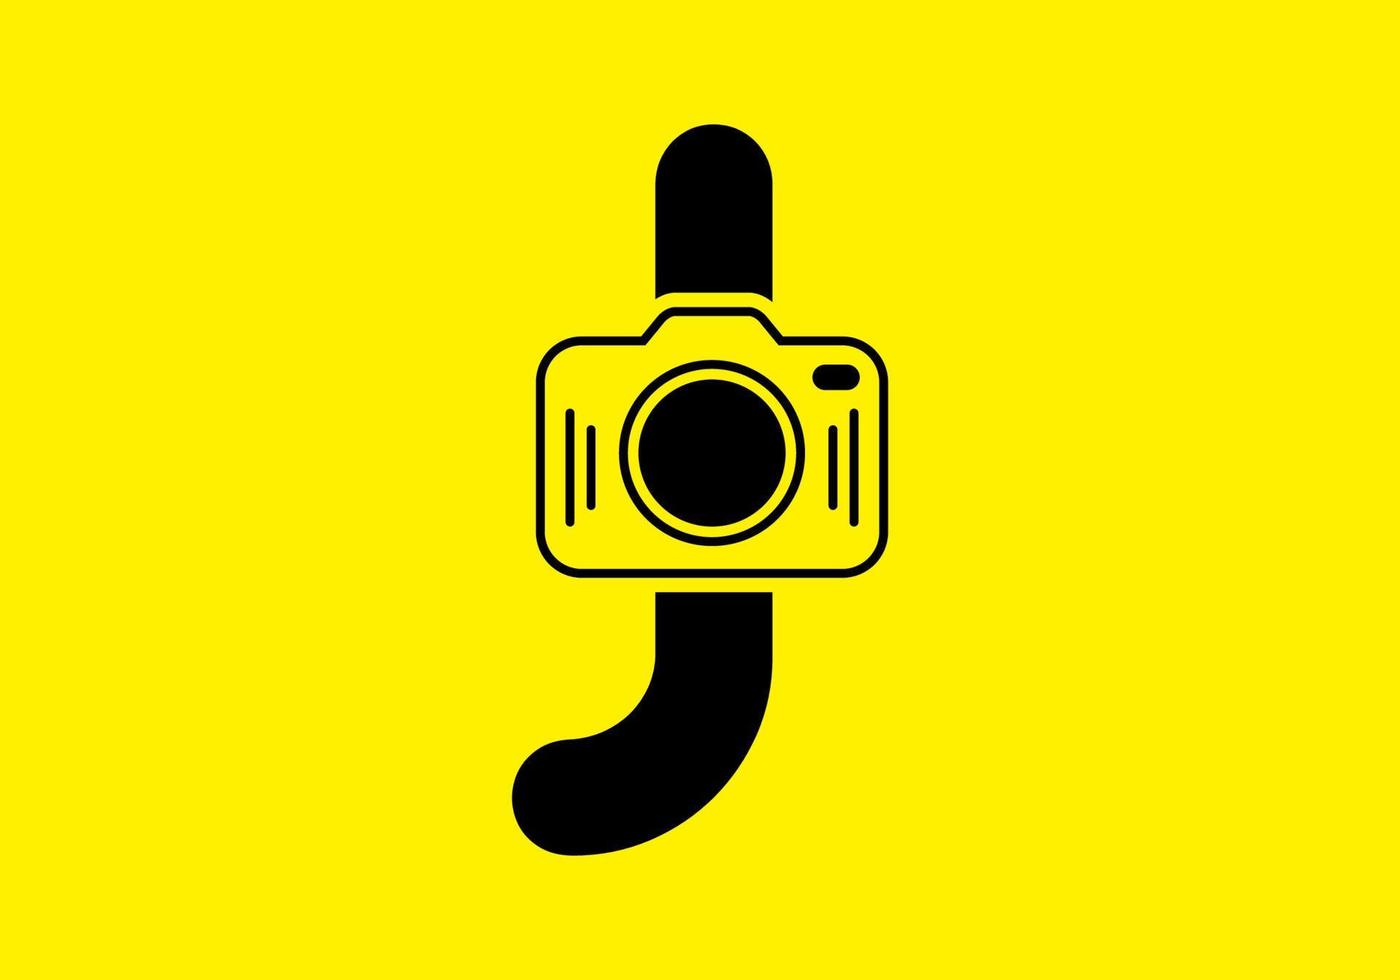 giallo nero della lettera j iniziale con fotocamera vettore